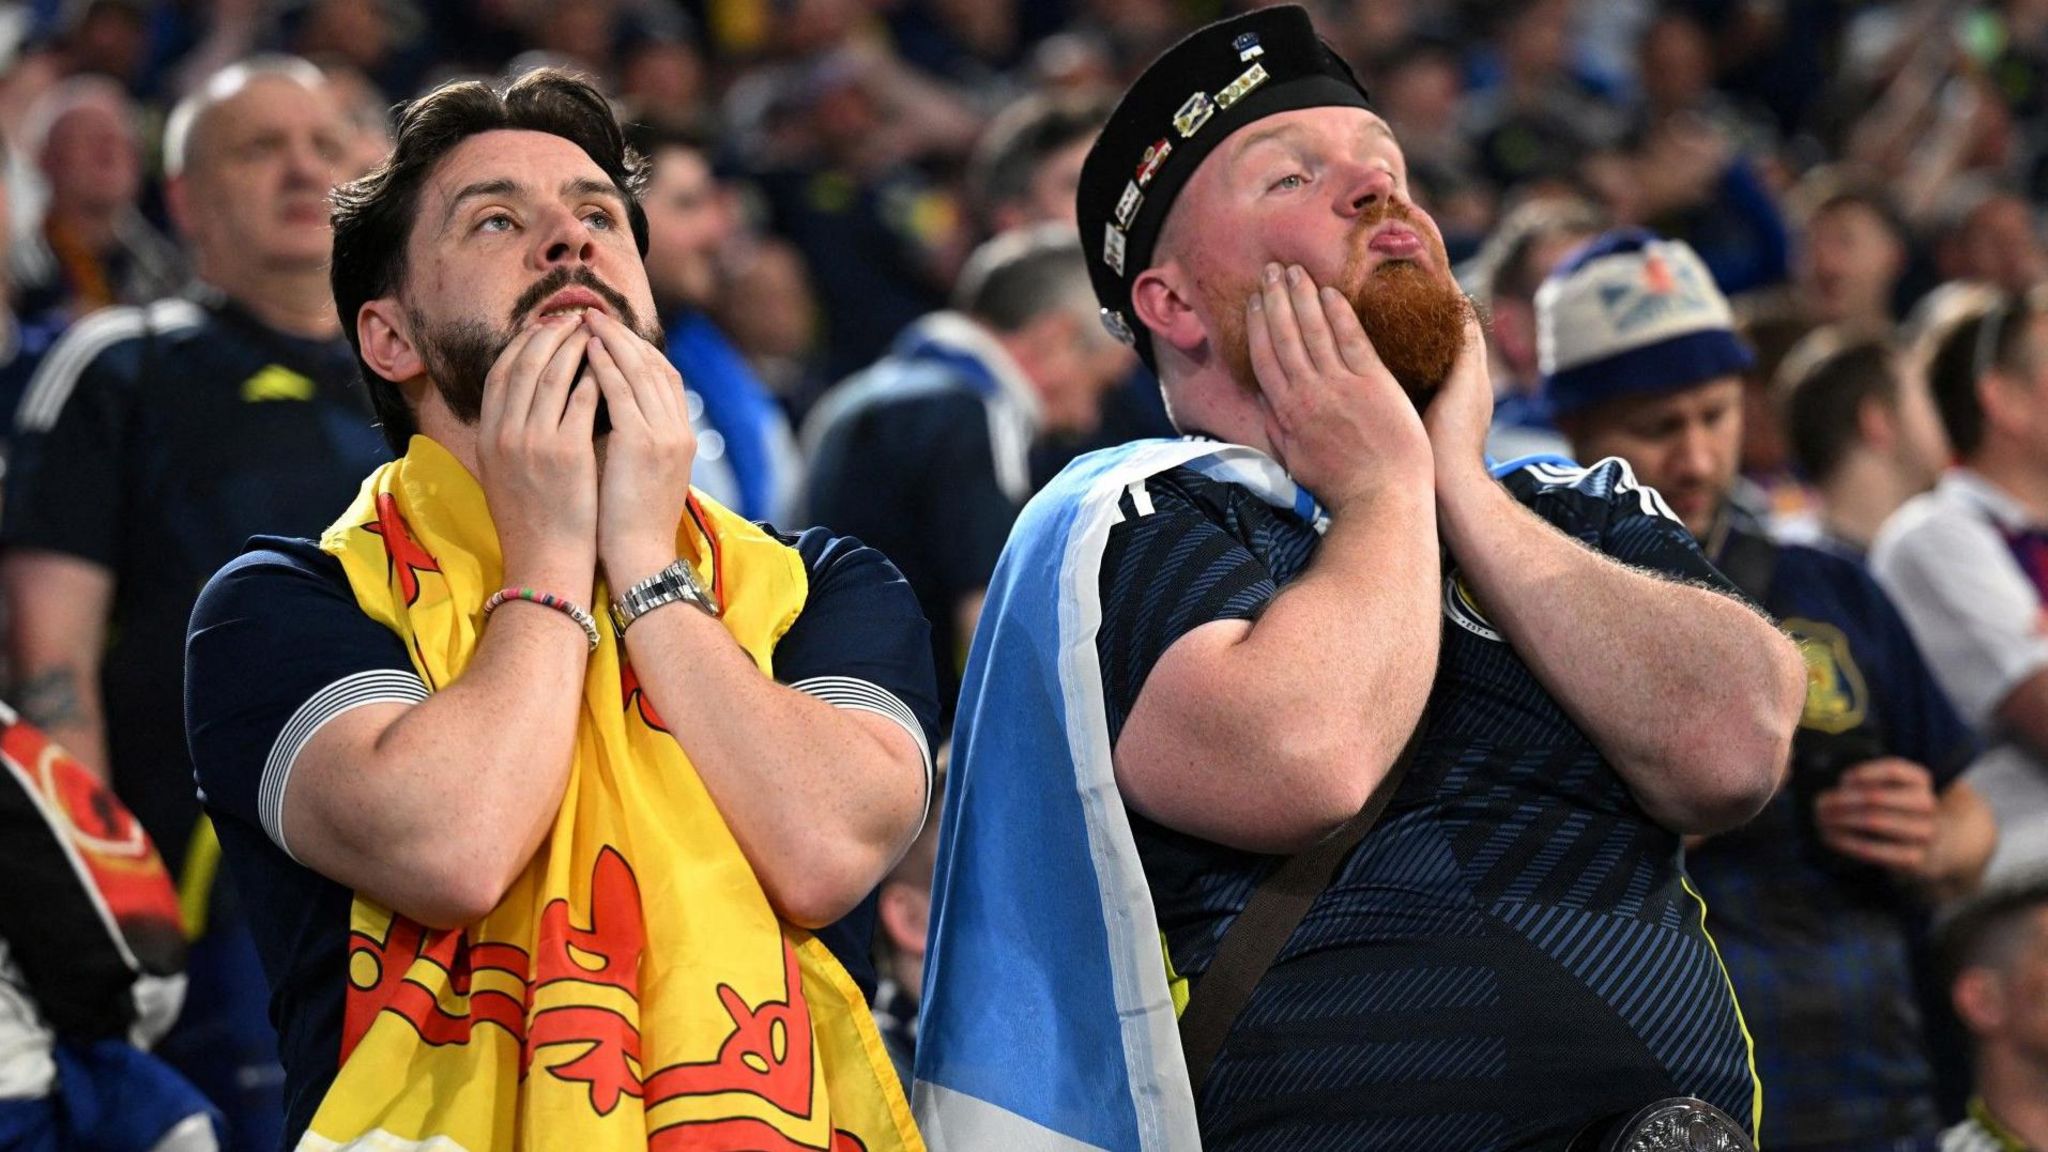 Scotland fans 